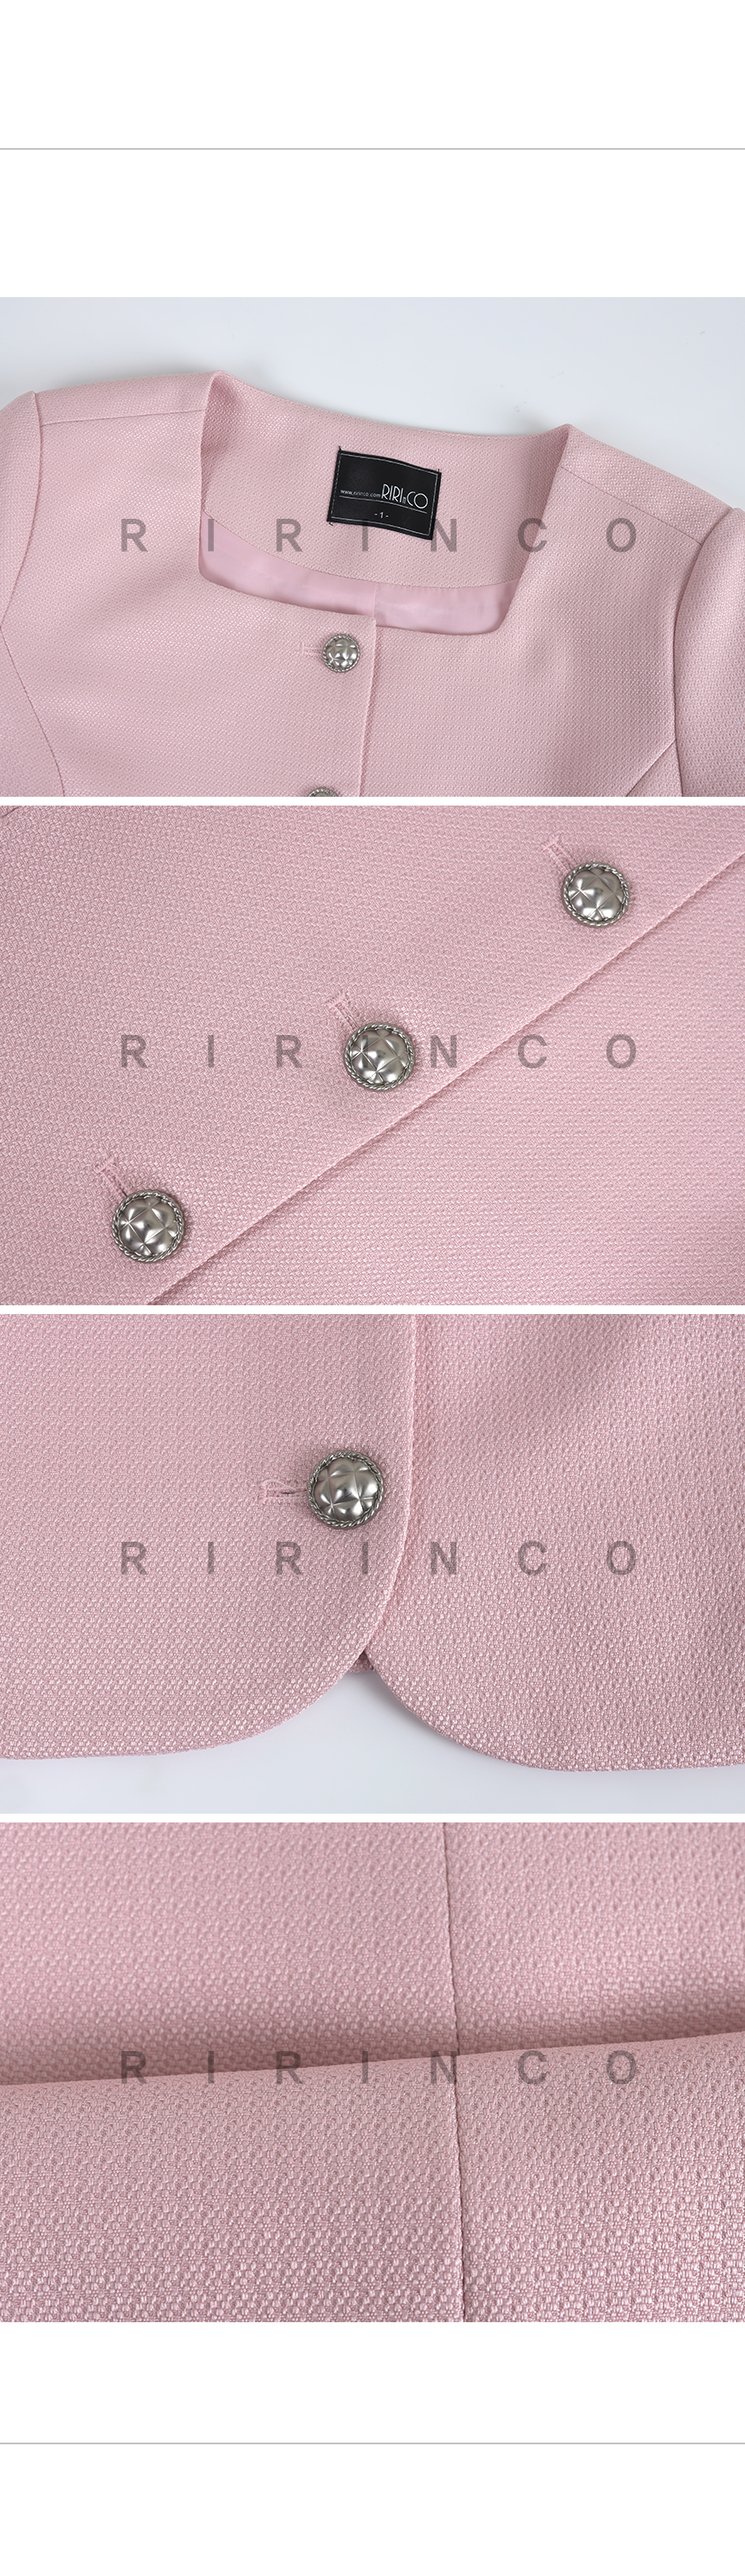 RIRINCO ツイードスクエアネックジャケット